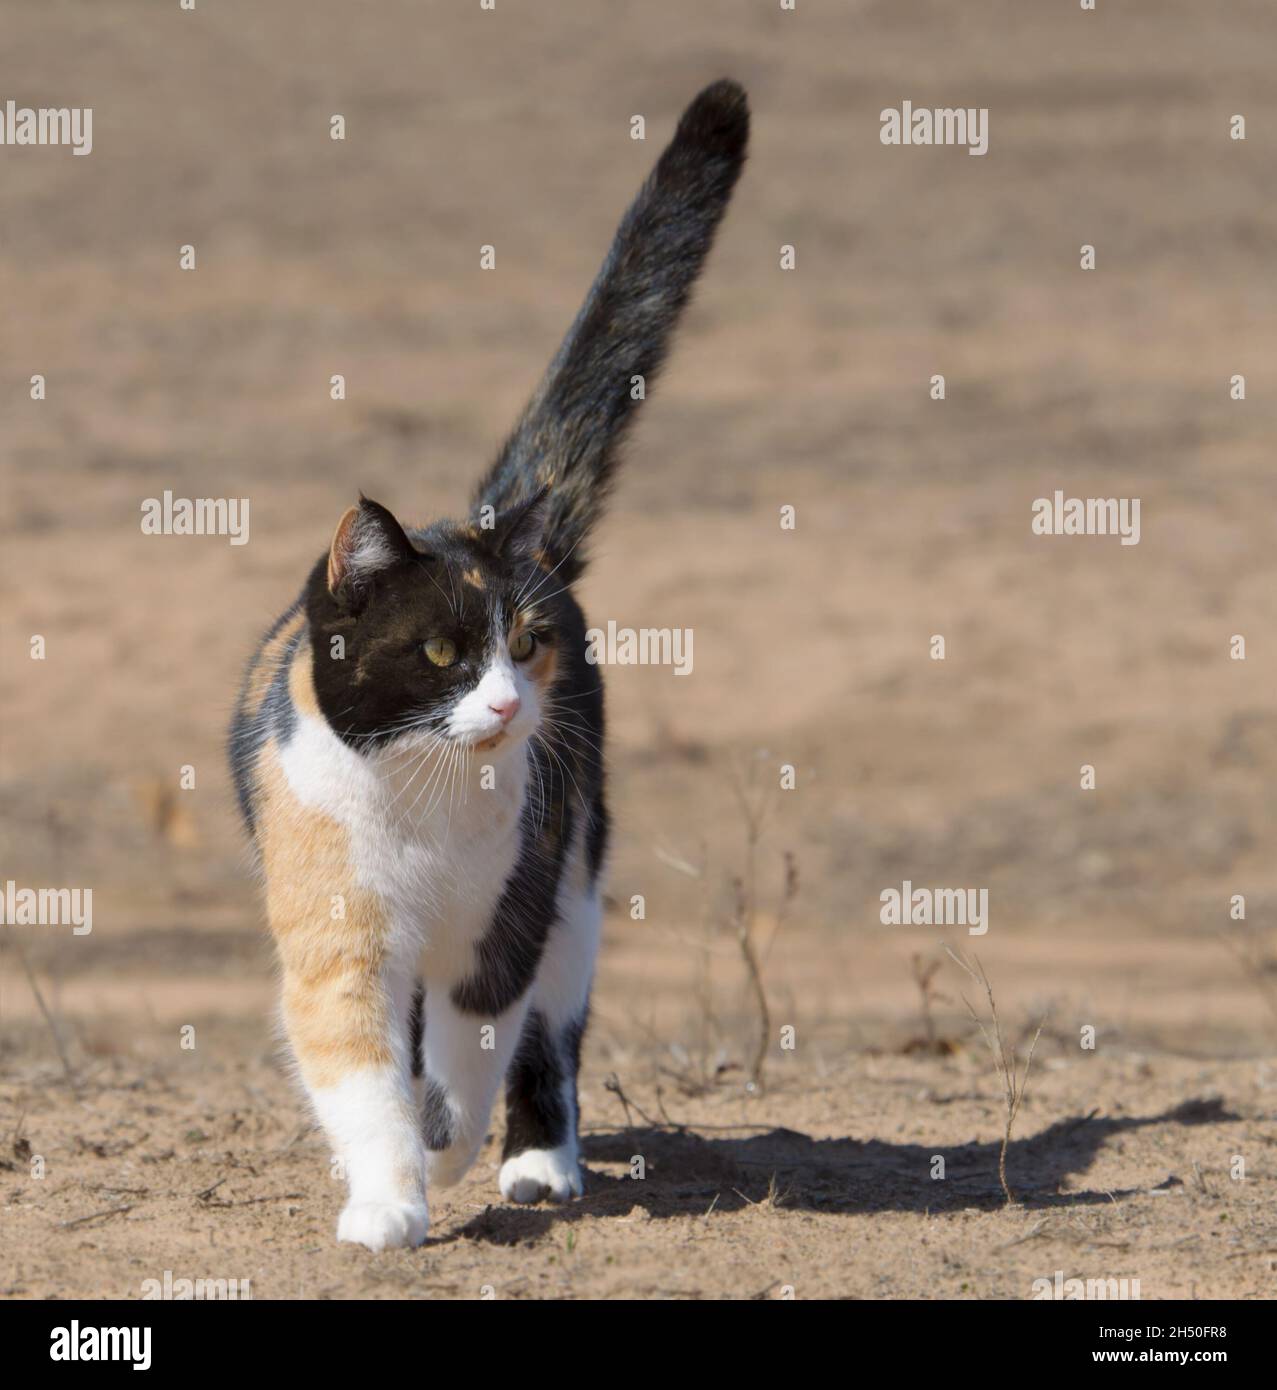 Hermoso gato calico caminando hacia el espectador al aire libre con su cola alta mostrando confianza, mirando a la derecha del espectador Foto de stock